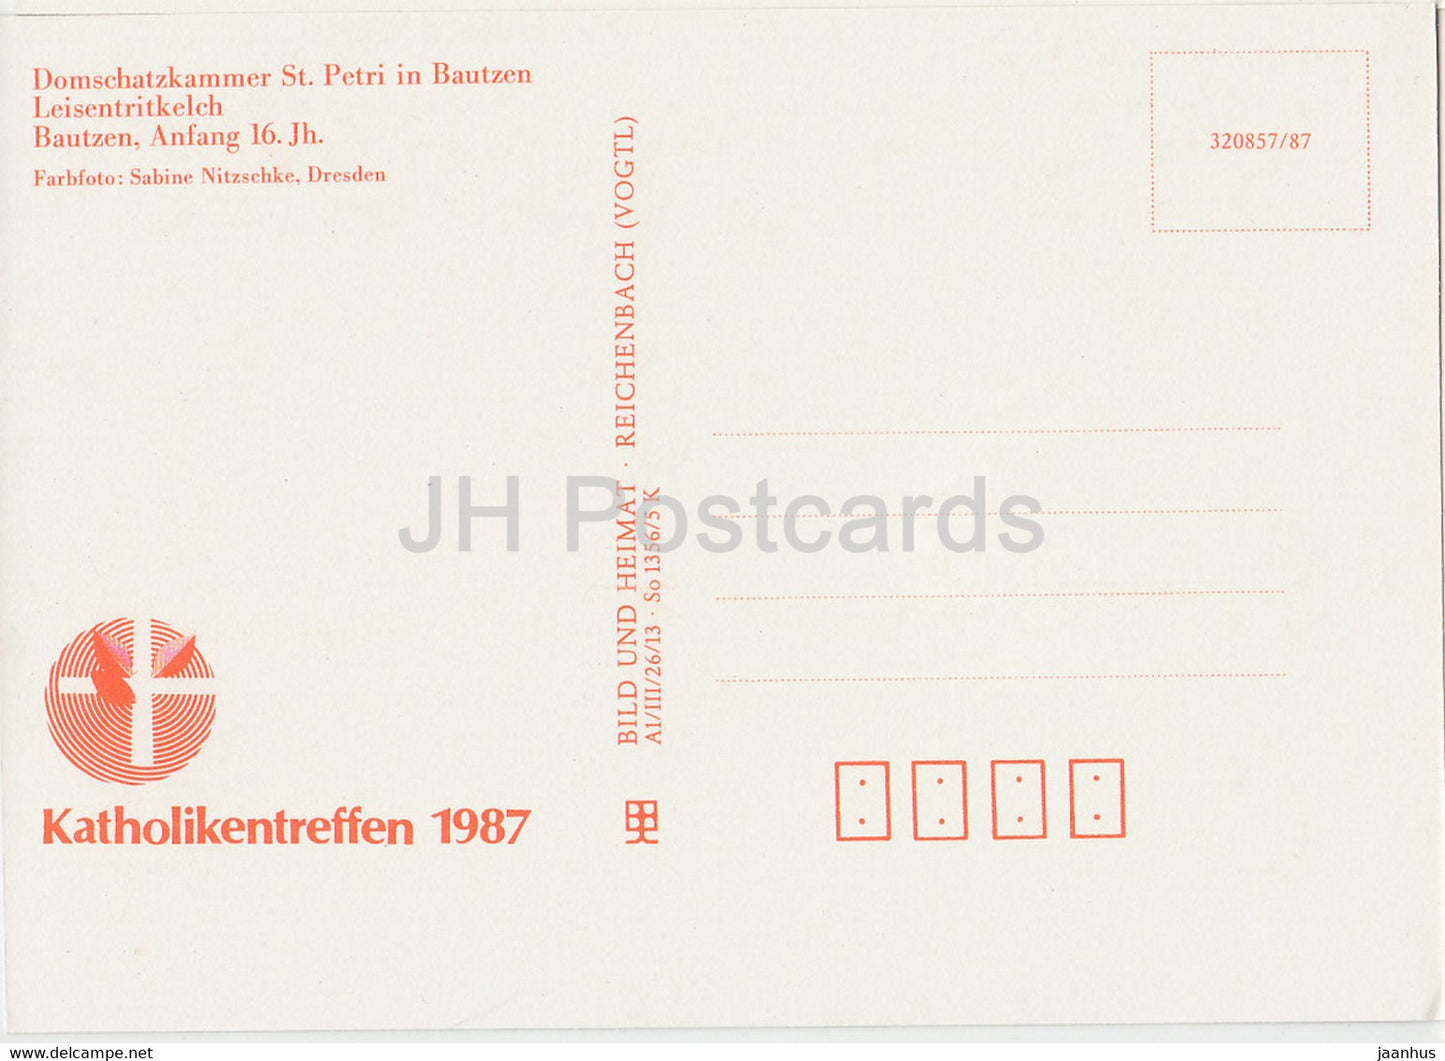 Leisentritkelch - chalice - Domschatzkammer St Petri in Bautzen - 1987 - DDR Germany - unused